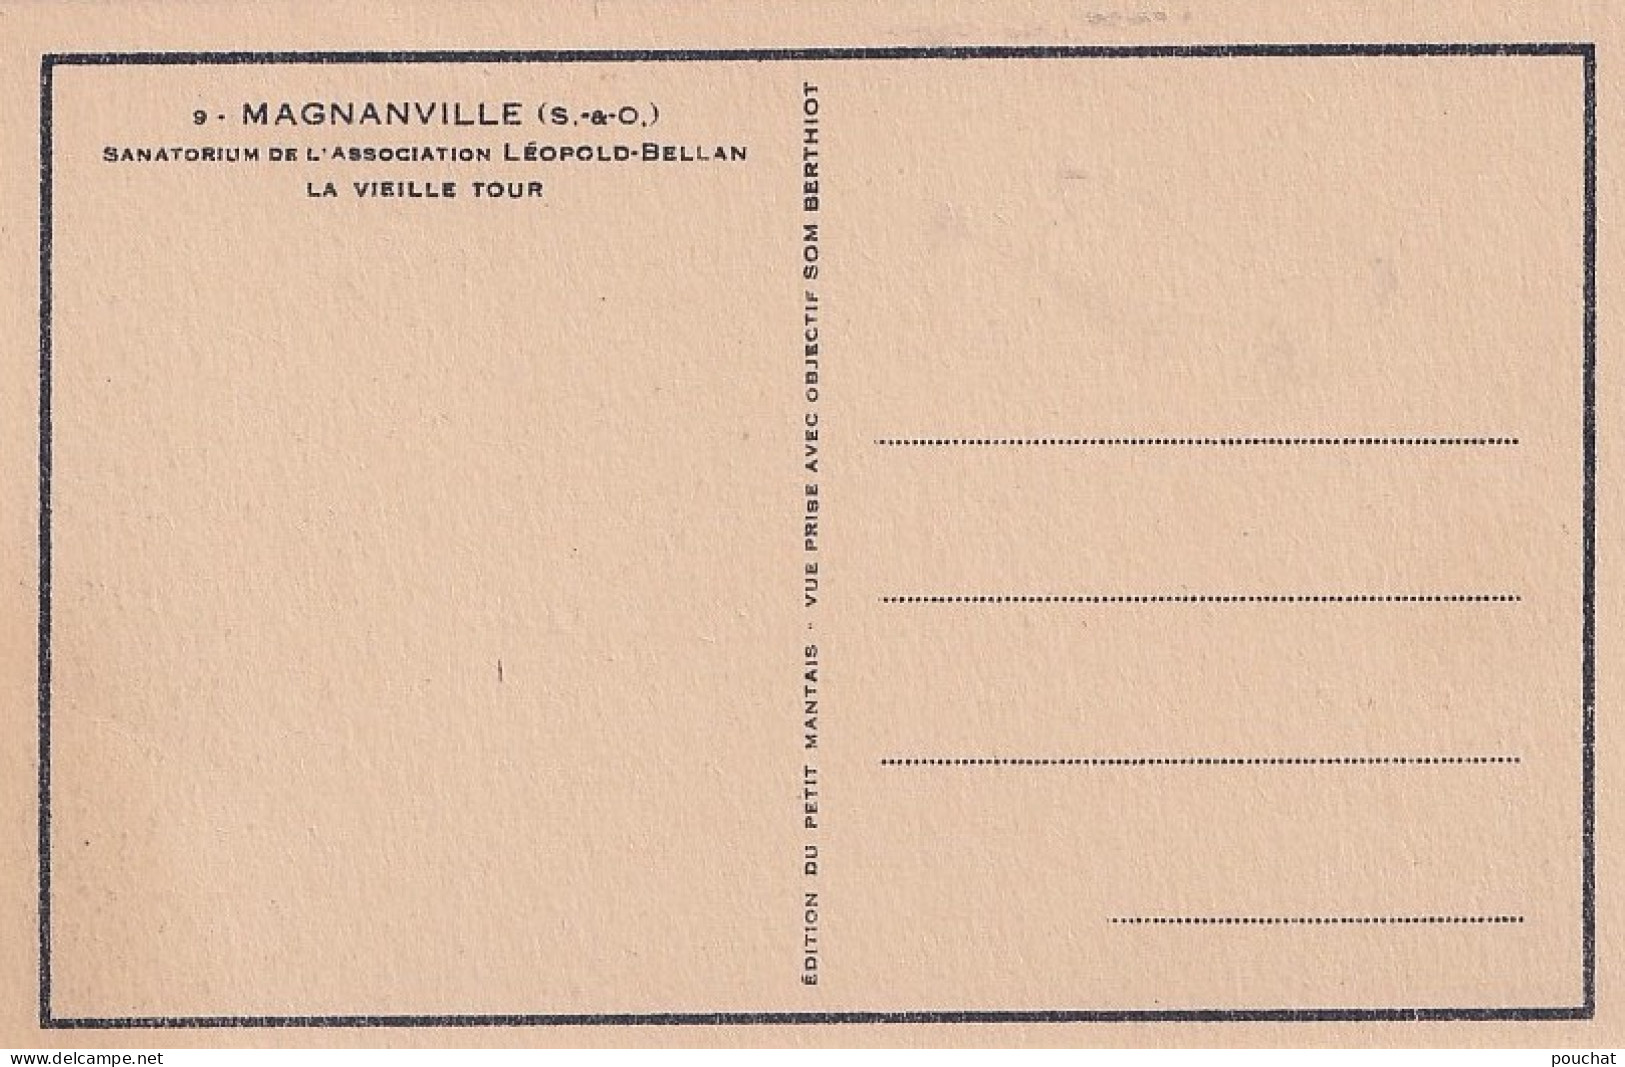 S5-78) MAGNANVILLE - SANATORIUM DE L'ASSOCIATION LEOPOLD BELLAN - LA VIEILLE TOUR - ( 2 SCANS ) - Magnanville